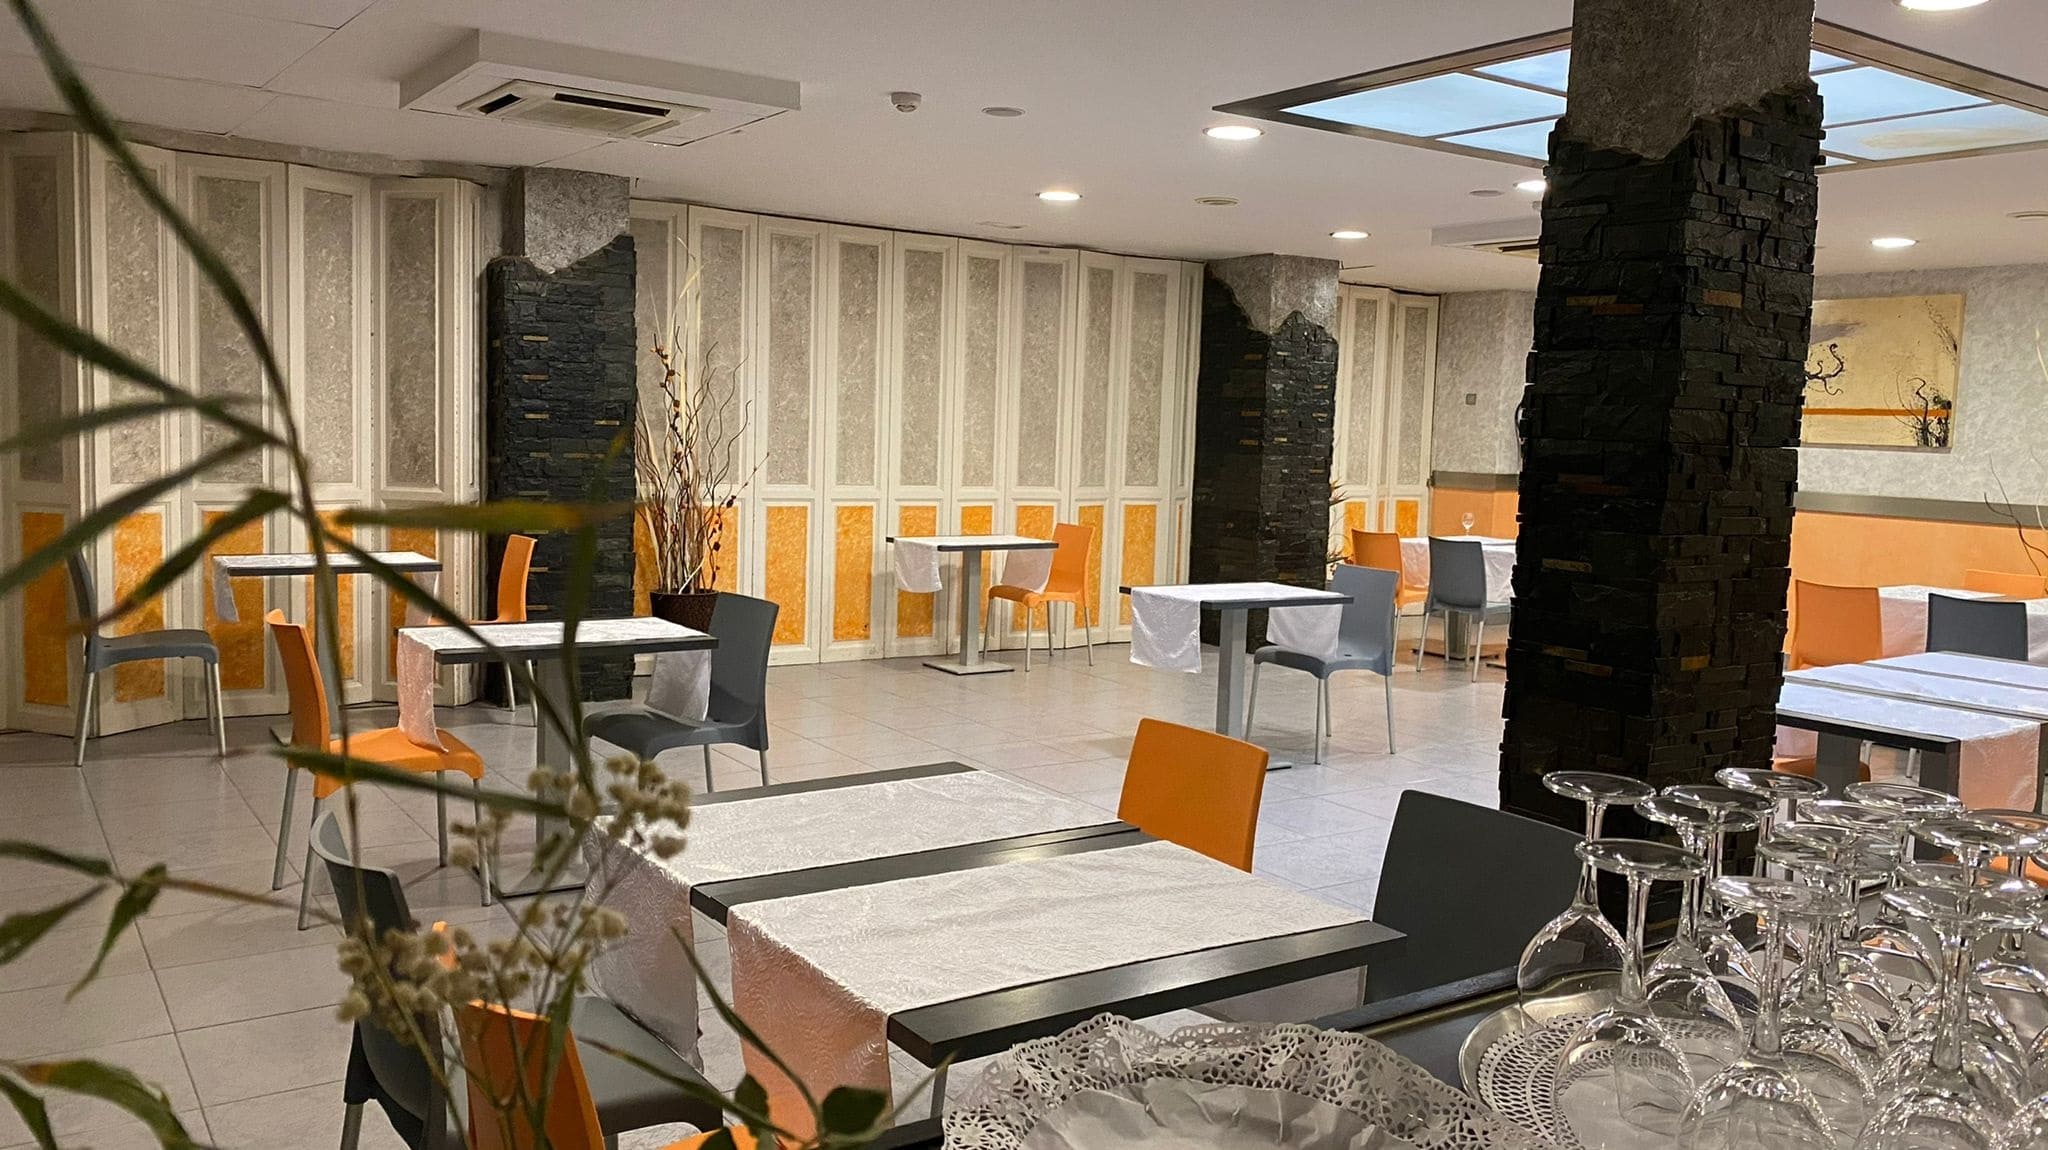 Elegante restaurante de cocina tradicional y vanguardista riojana en el centro de Alfaro.                    